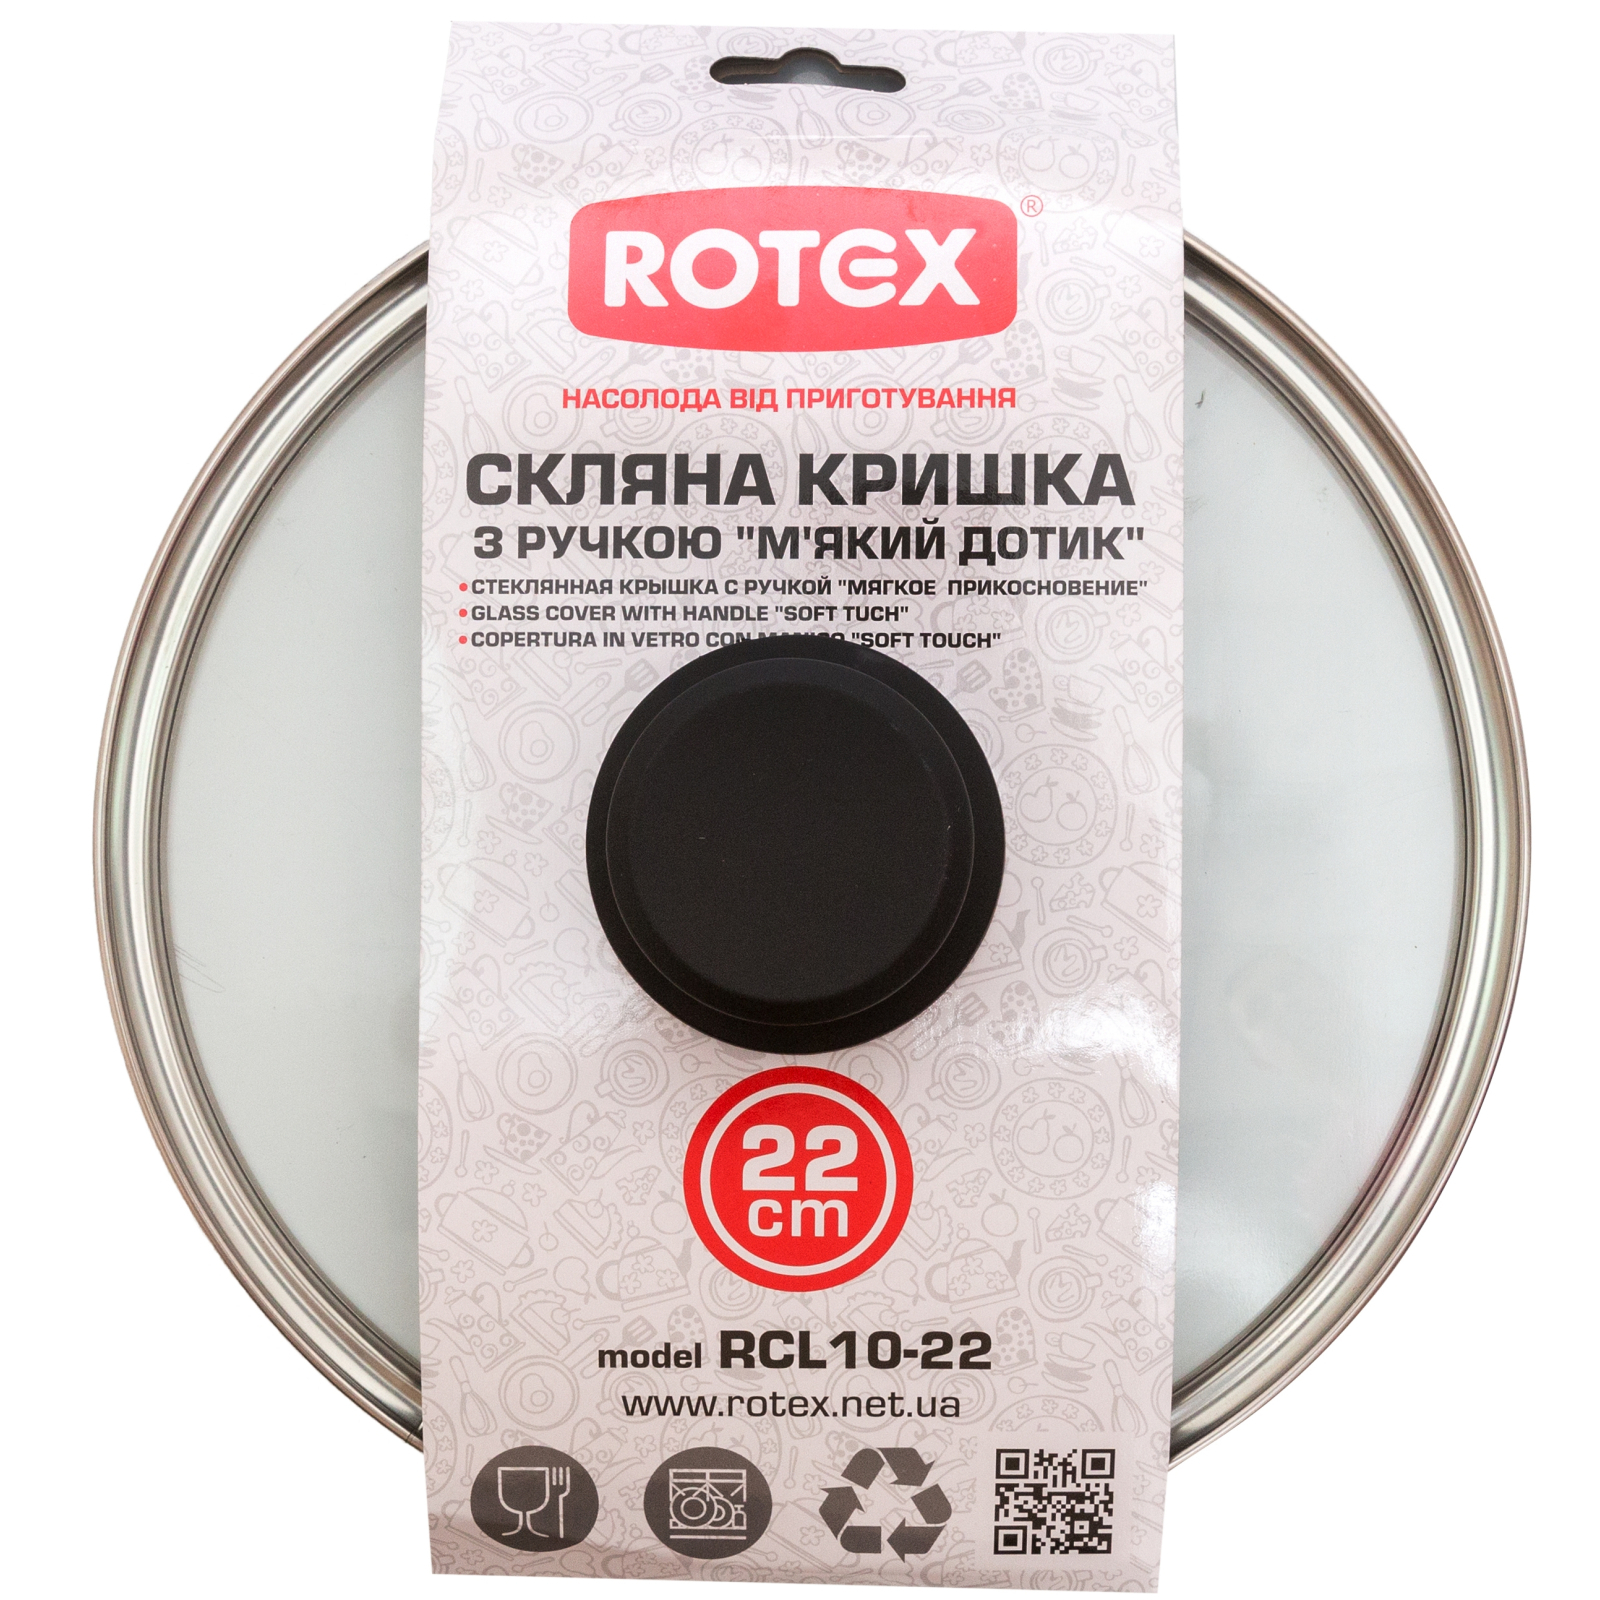 Крышка для посуды Rotex 22 см (RCL10-22) изображение 2